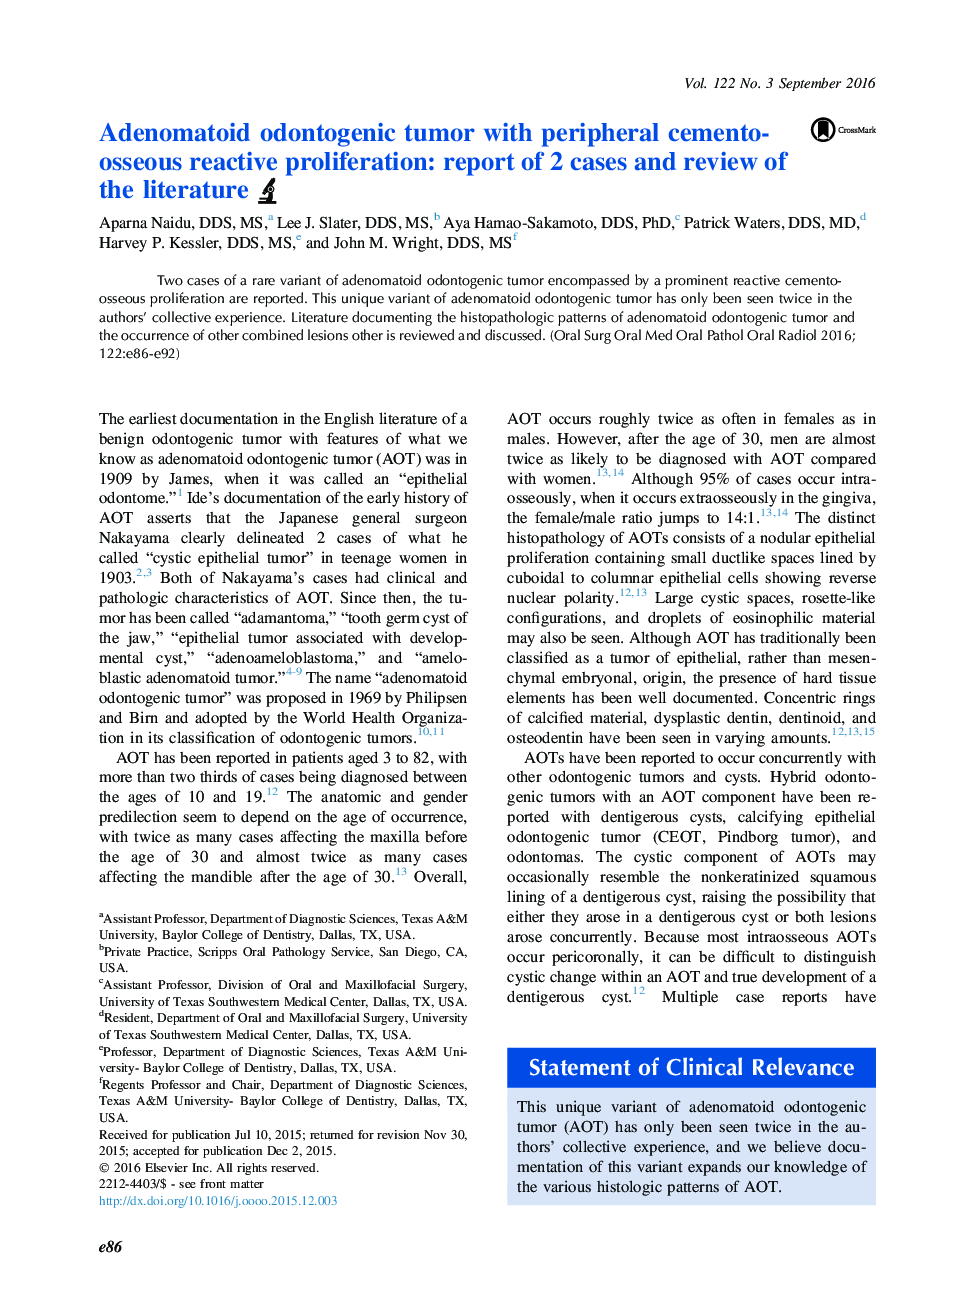 تومور ادنتوژنیک آدنوماتوئید با پرولیفراسیون واکنشی سلولی محیطی: گزارش 2 مورد و بررسی ادبیات 